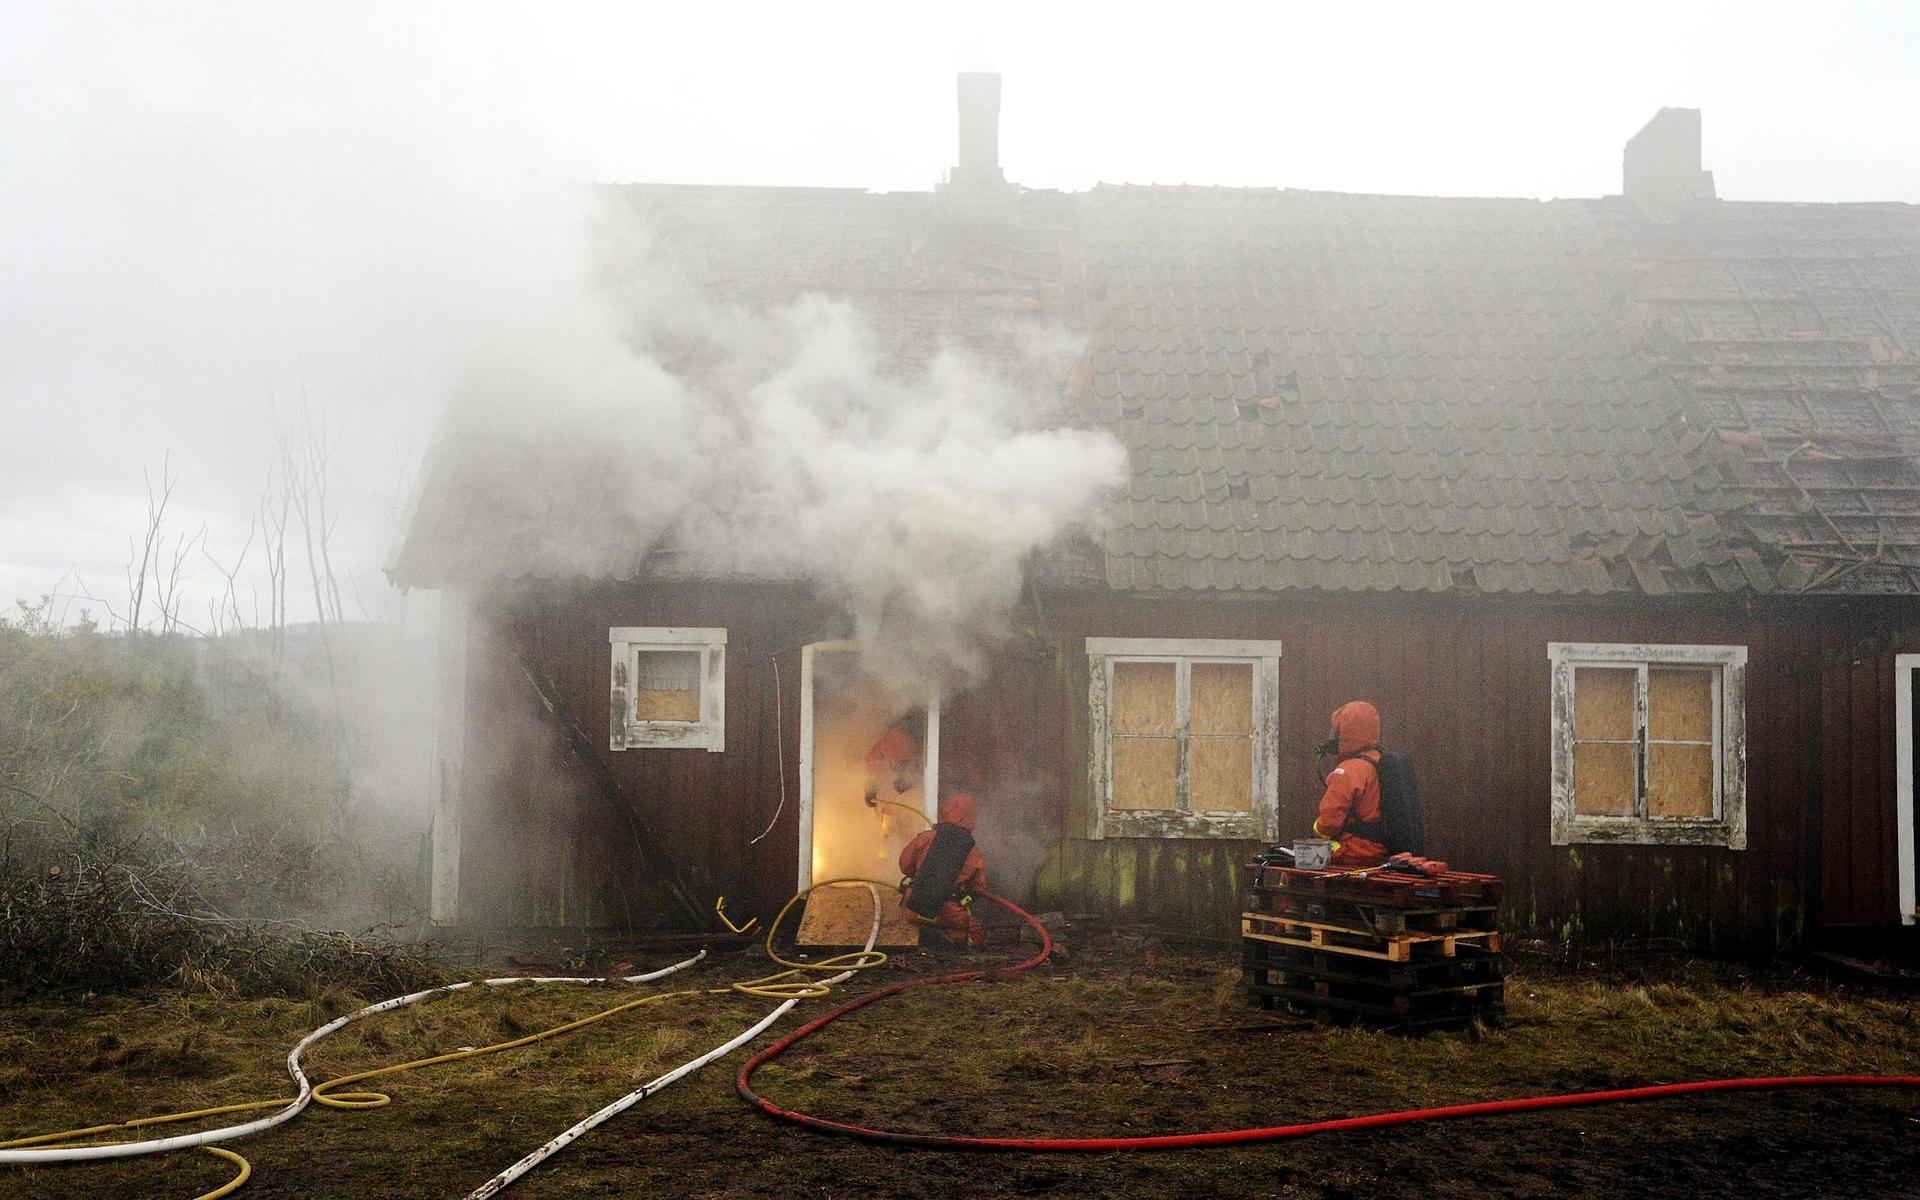 I slutet av 2012 använda Räddningstjänsten i Halmstad ödehuset som övningsobjekt och eldade upp det. 2015 blev den våldtäktsdömde mannen villkorligt frigiven.